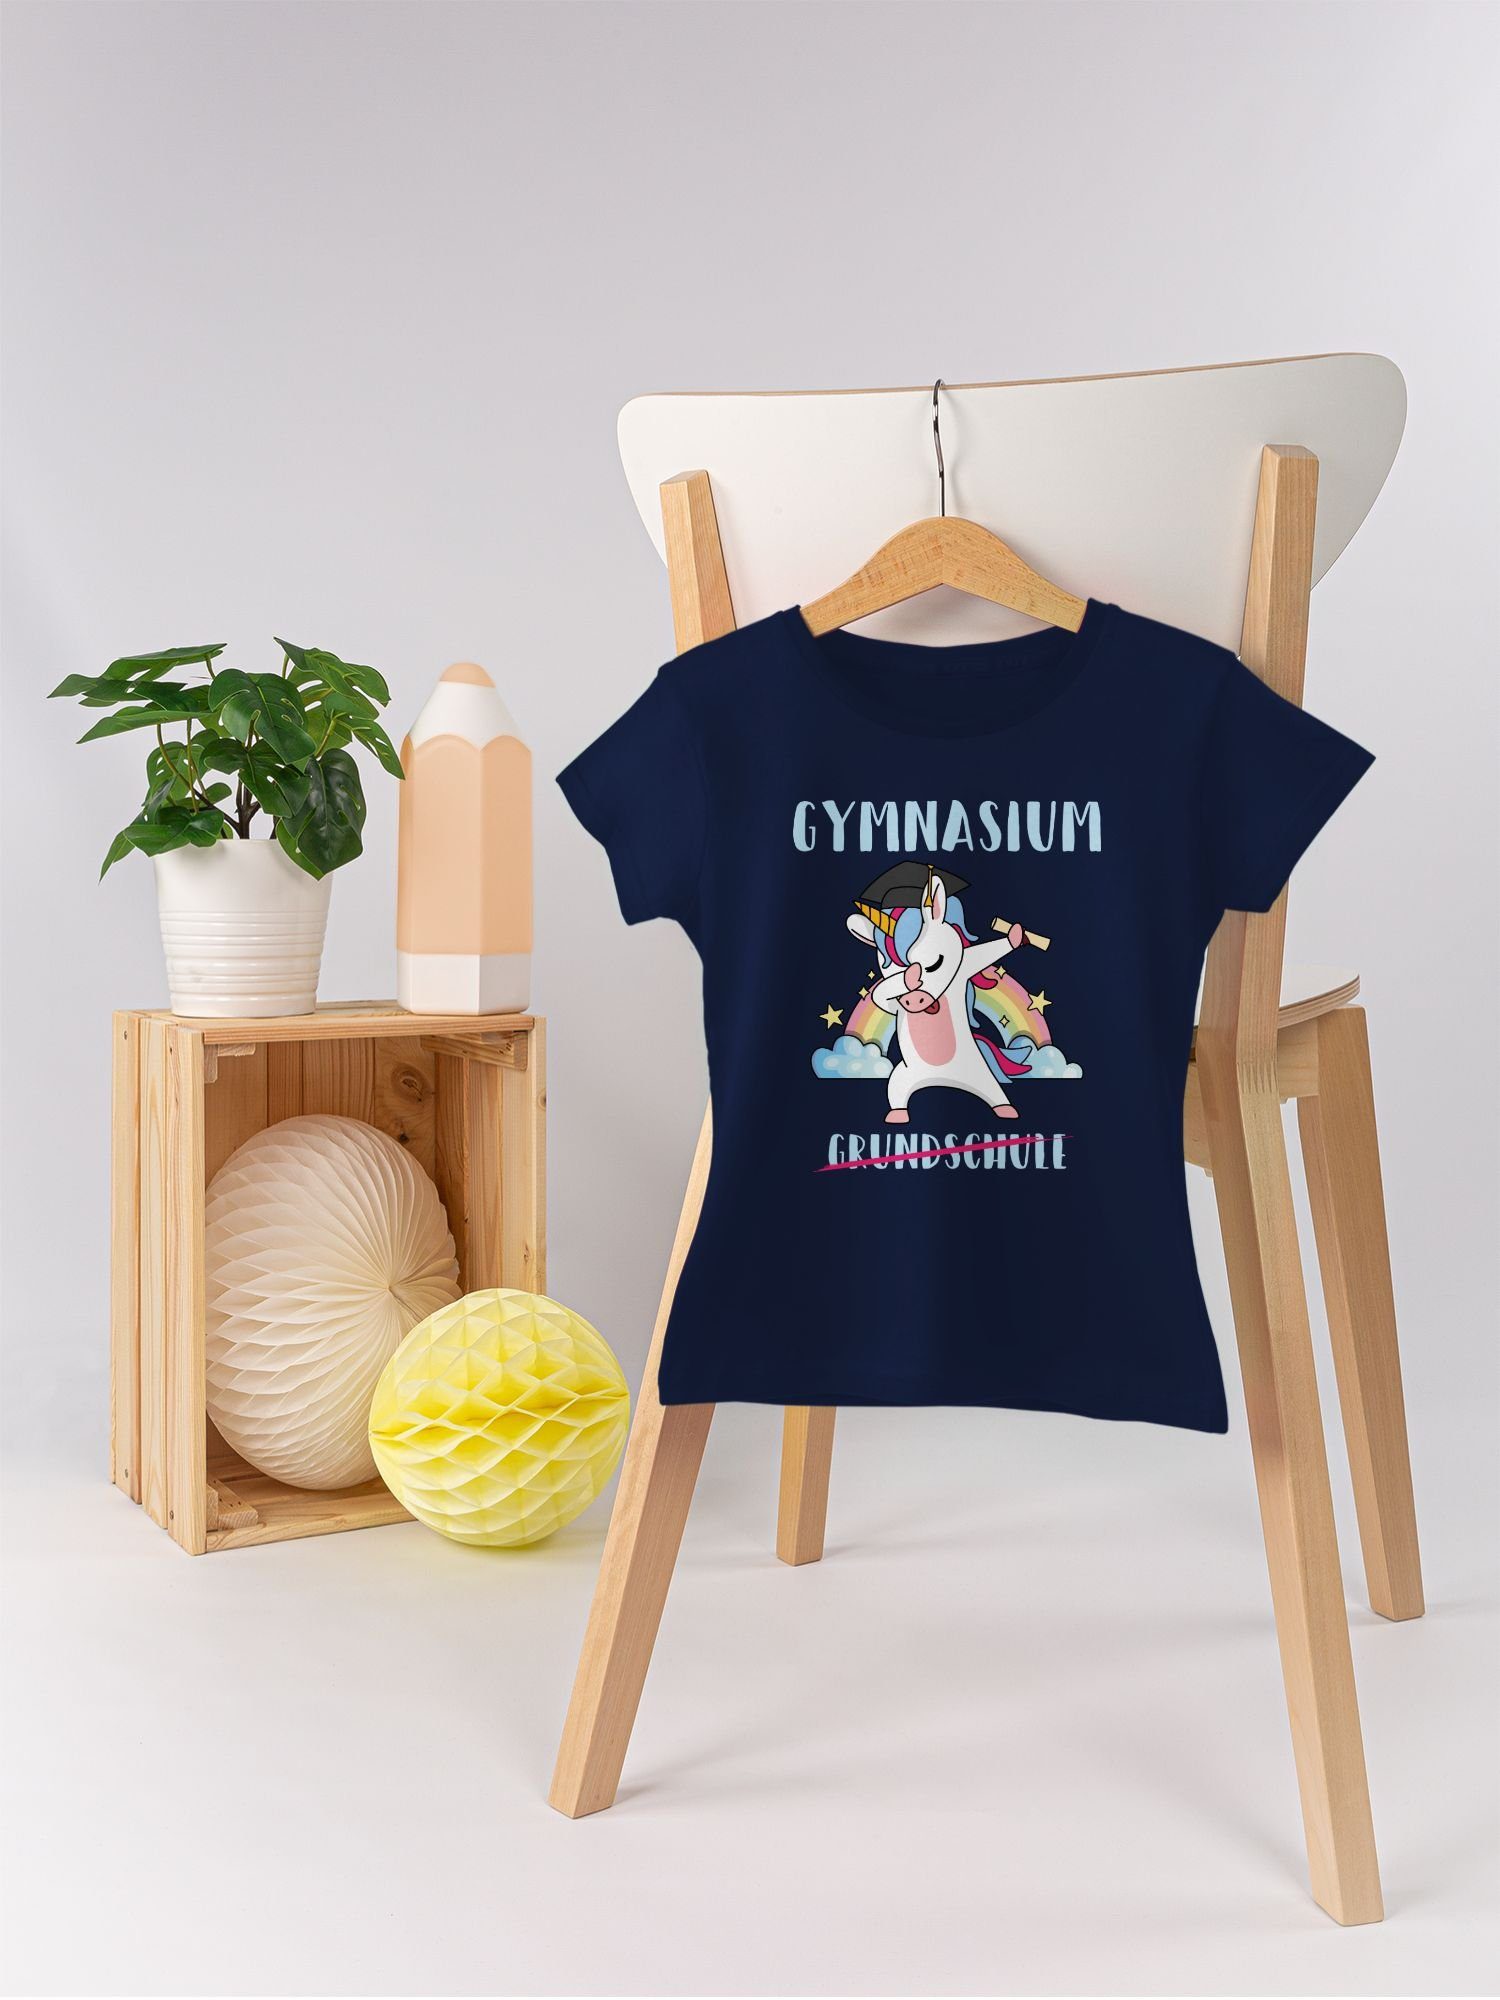 Gymnasium 1 Grundschule Mädchen Einschulung Shirtracer Einhorn Dunkelblau T-Shirt